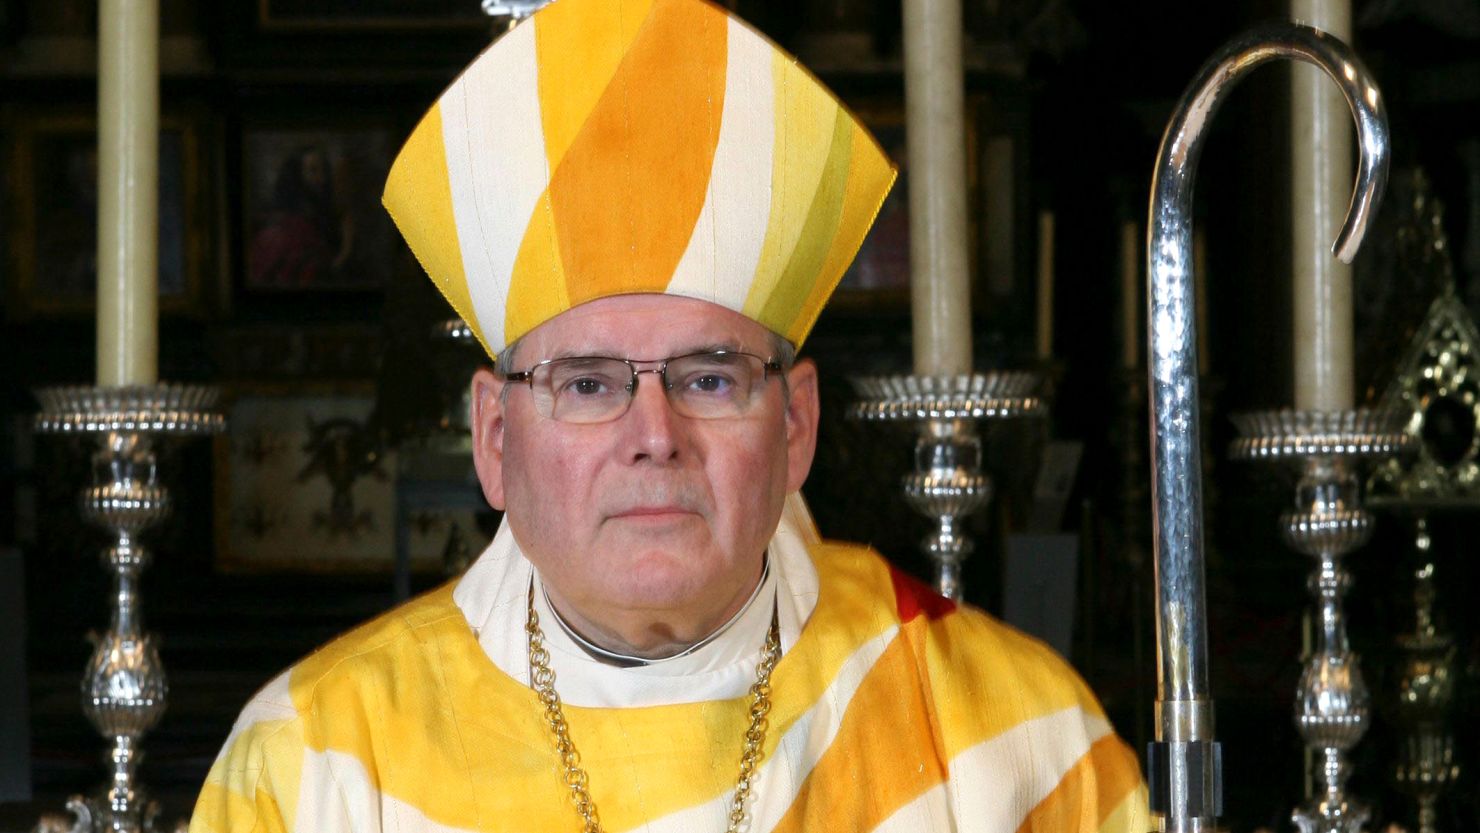 Former bishop Roger Vangheluwe in Bruges on November 7, 2006.